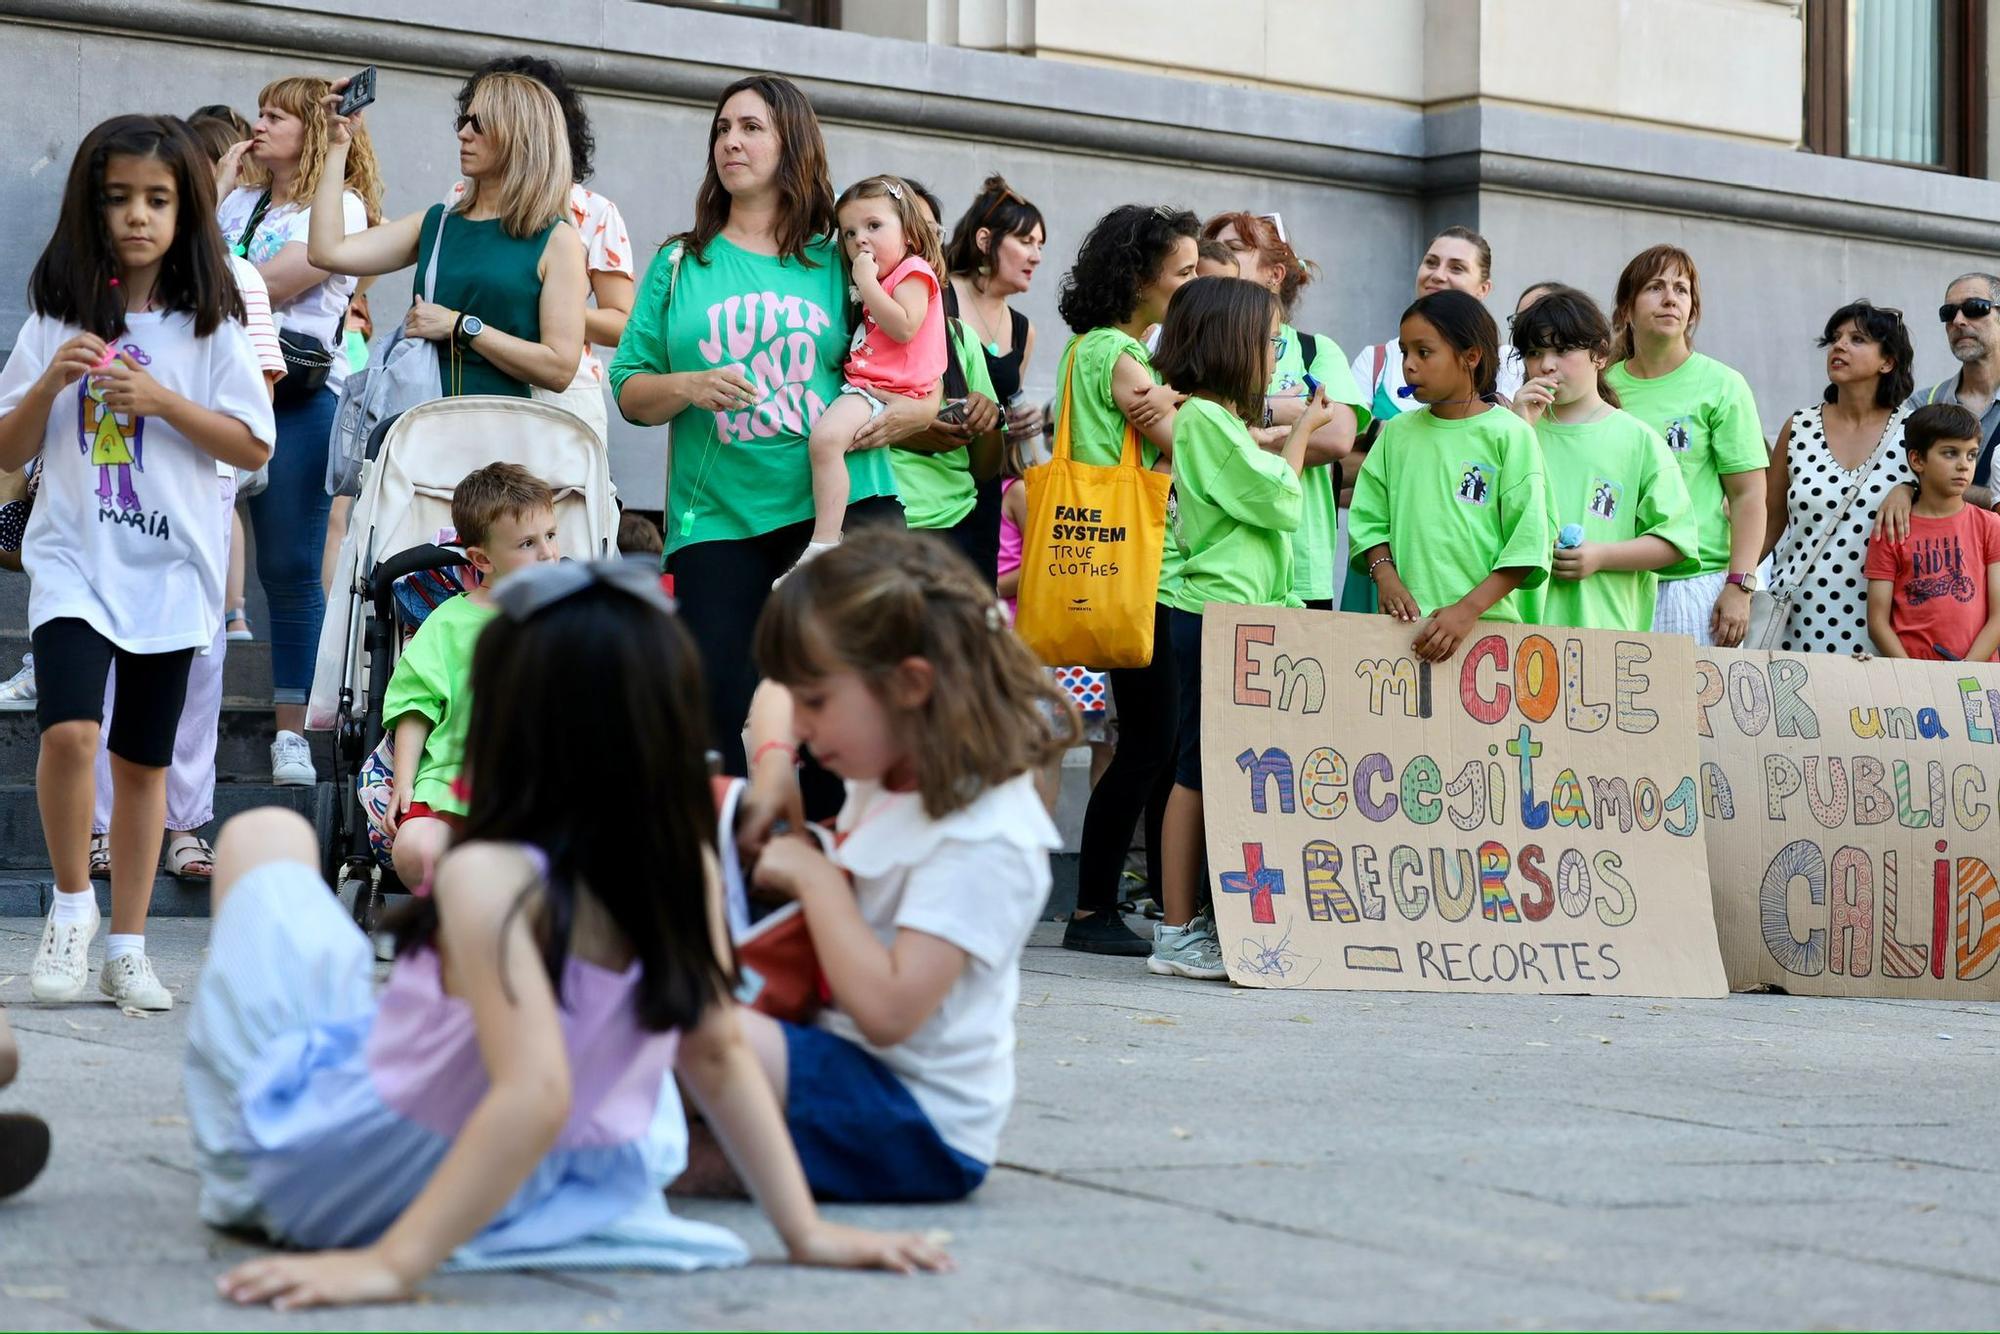 En imágenes | La 'marea verde' vuelve a las calles de Zaragoza contra los recortes en Educación